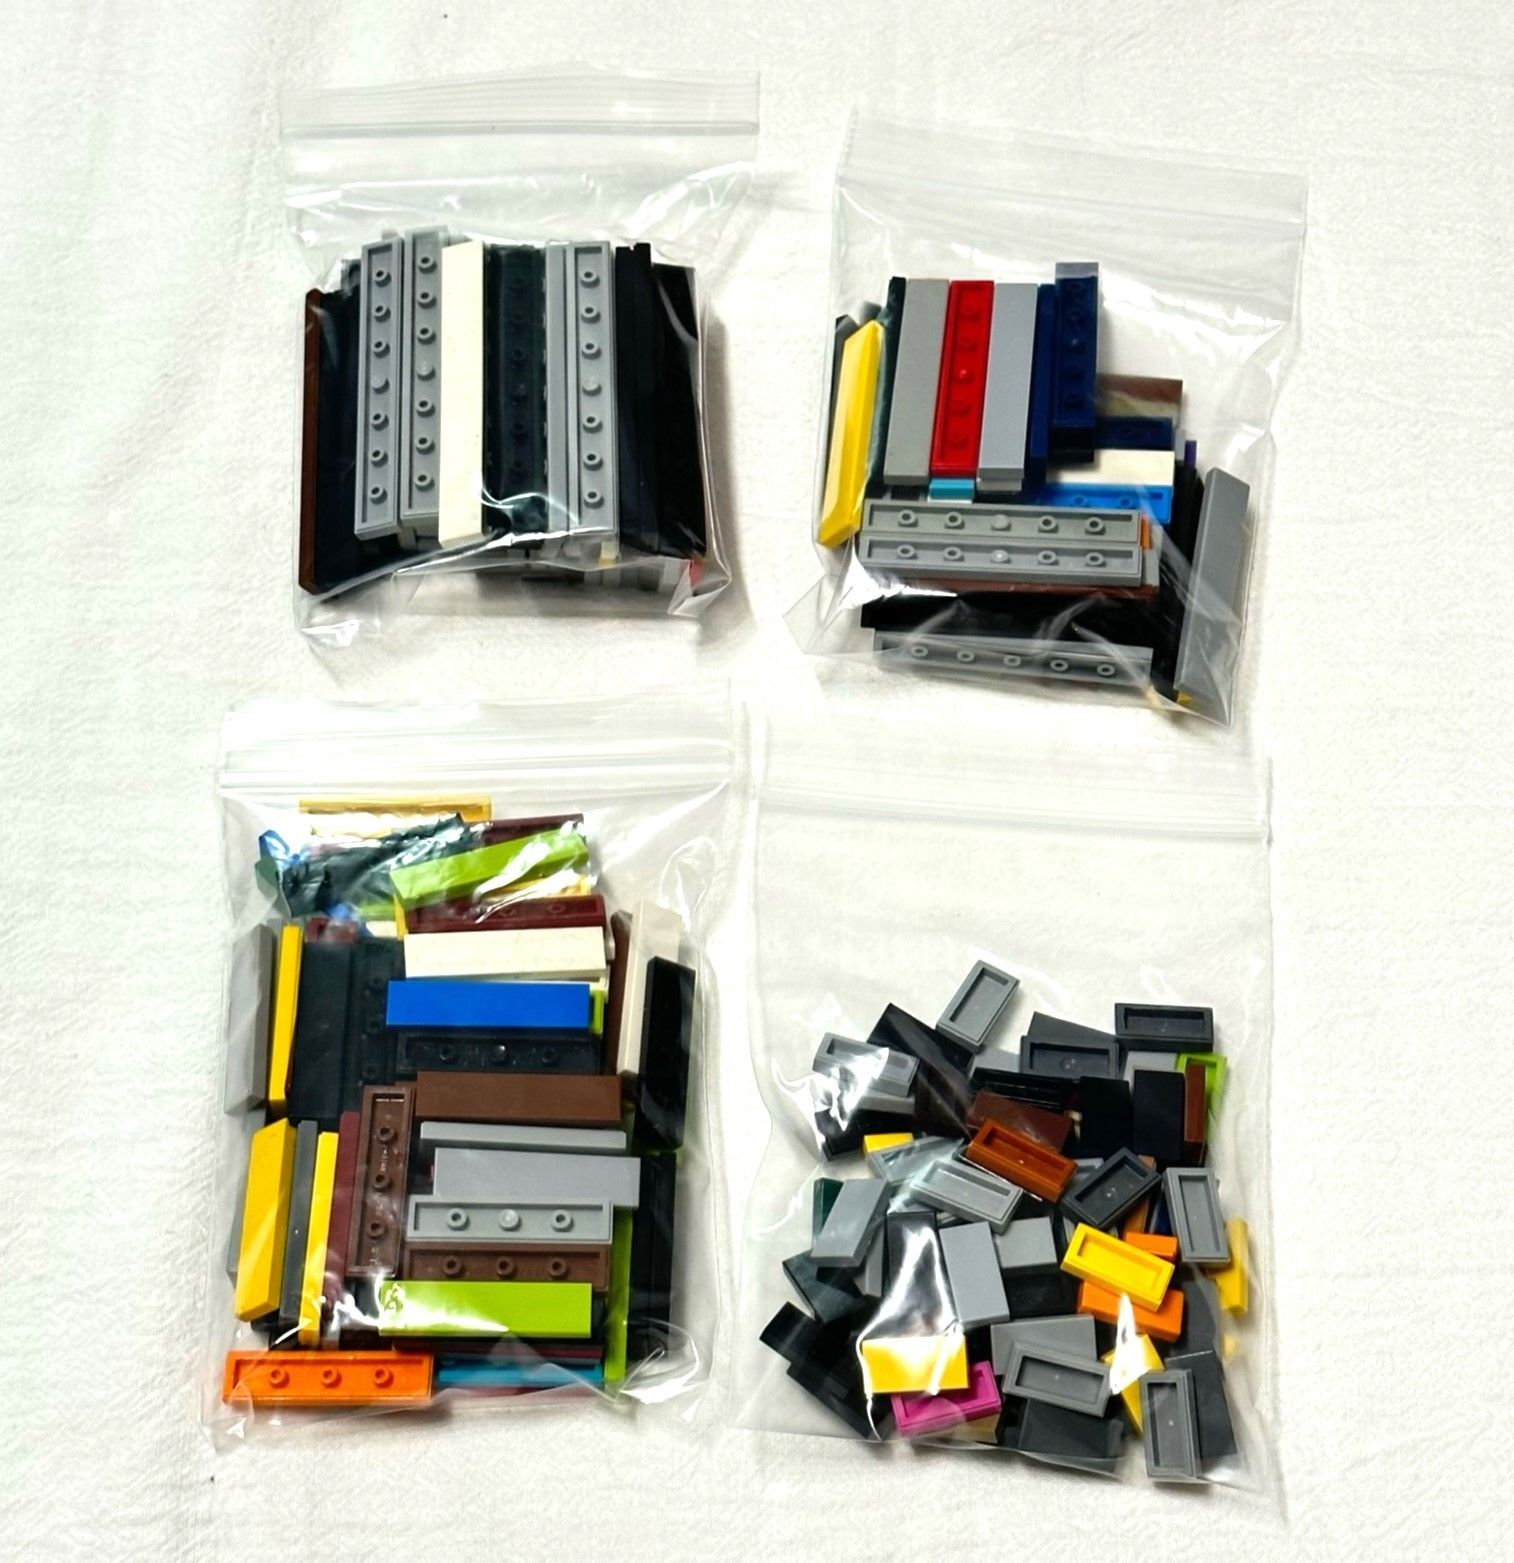 LEGO レゴ 中古 パーツ タイル 1x2 1x4 1x6 1x8 4種類 まとめ 大量